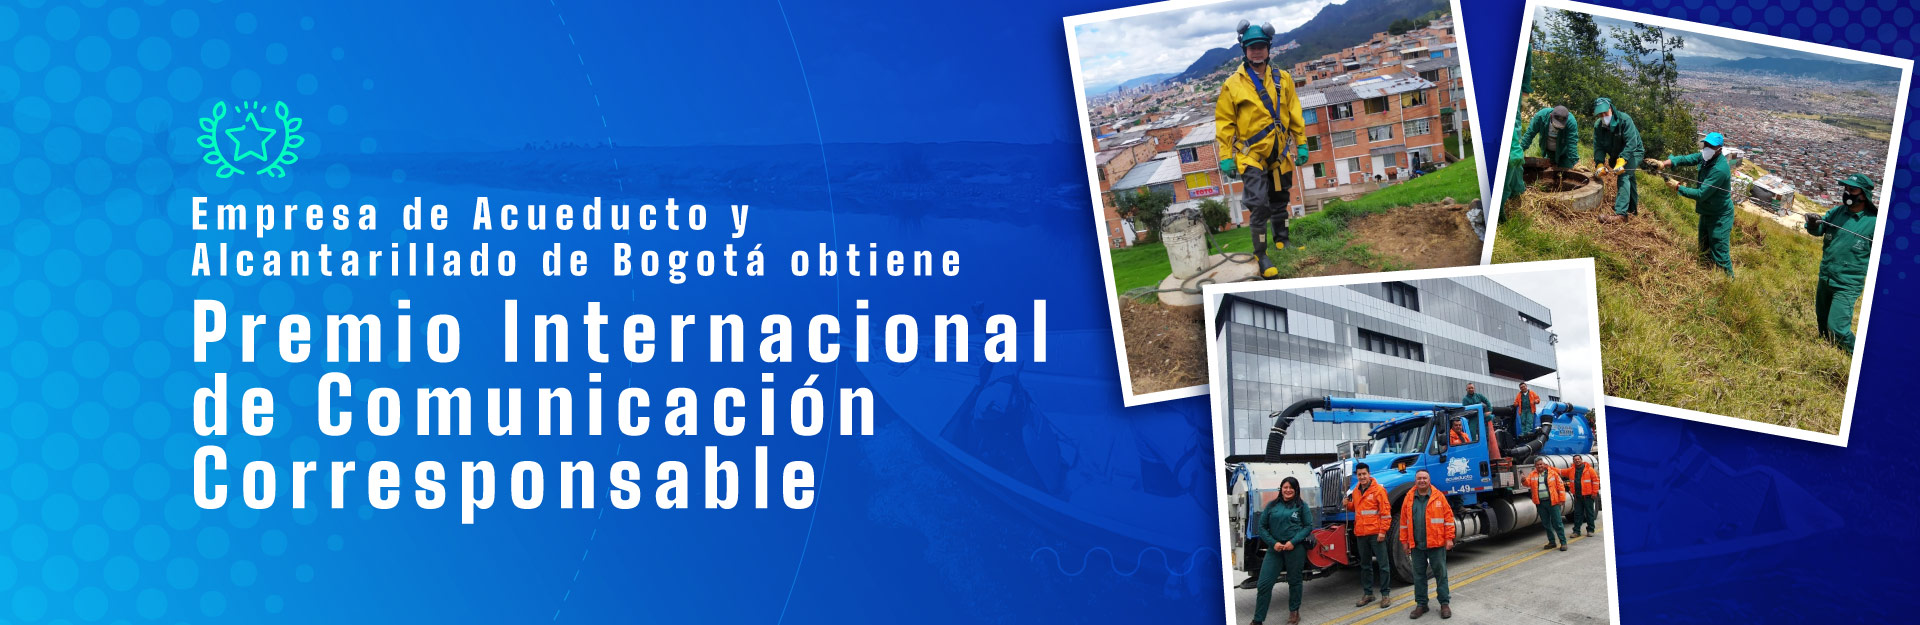 Empresa de Acueducto y Alcantarillado de Bogotá obtiene  premio internacional de comunicación corresponsable